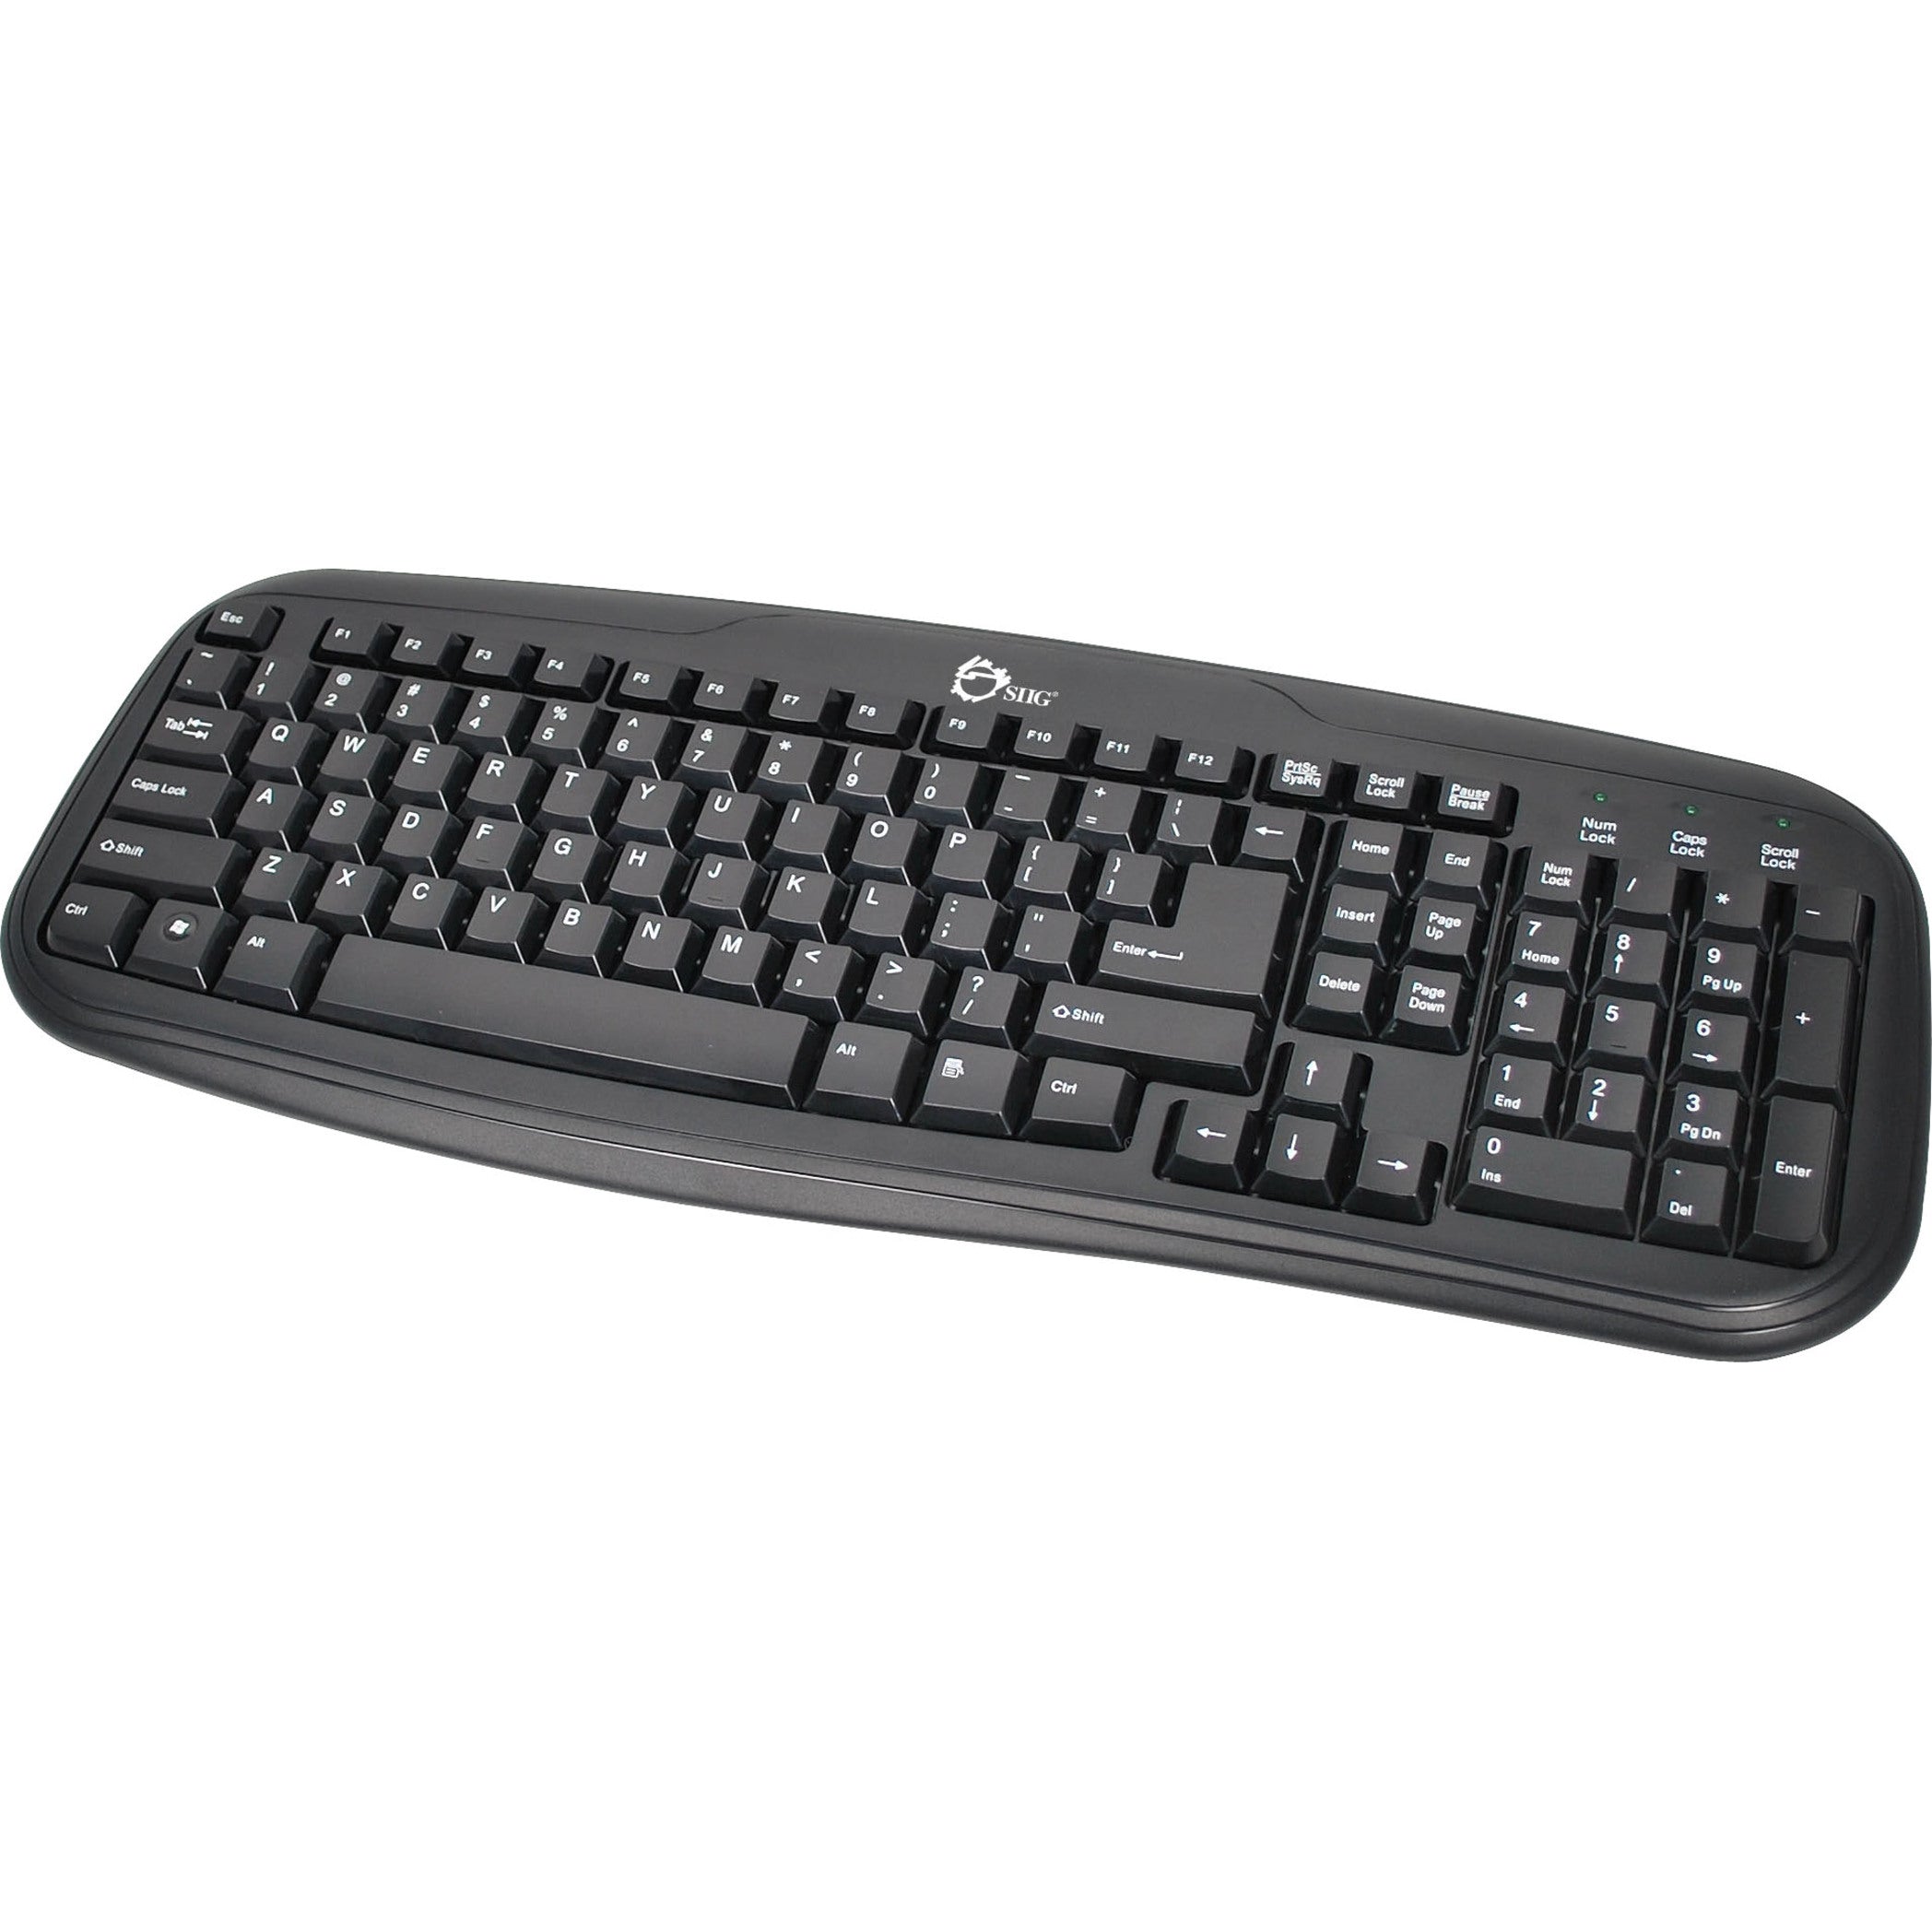 SIIG JK-US0012-S1 USB Desktop Keyboard, Water Resistant, Quiet Keys, 103 Keys